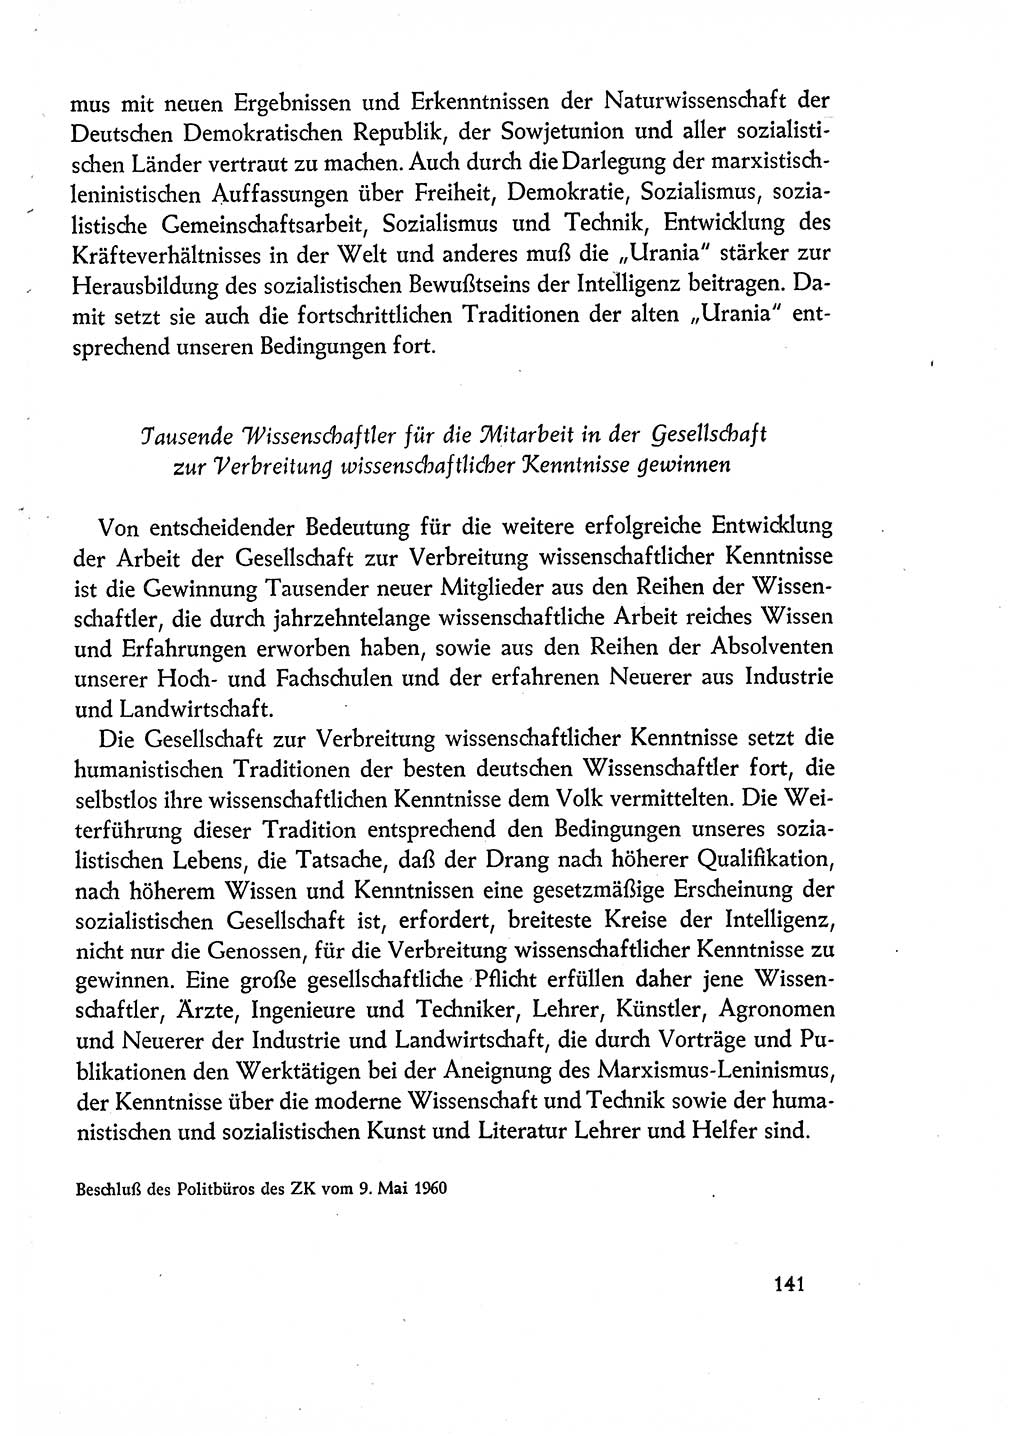 Dokumente der Sozialistischen Einheitspartei Deutschlands (SED) [Deutsche Demokratische Republik (DDR)] 1960-1961, Seite 141 (Dok. SED DDR 1960-1961, S. 141)